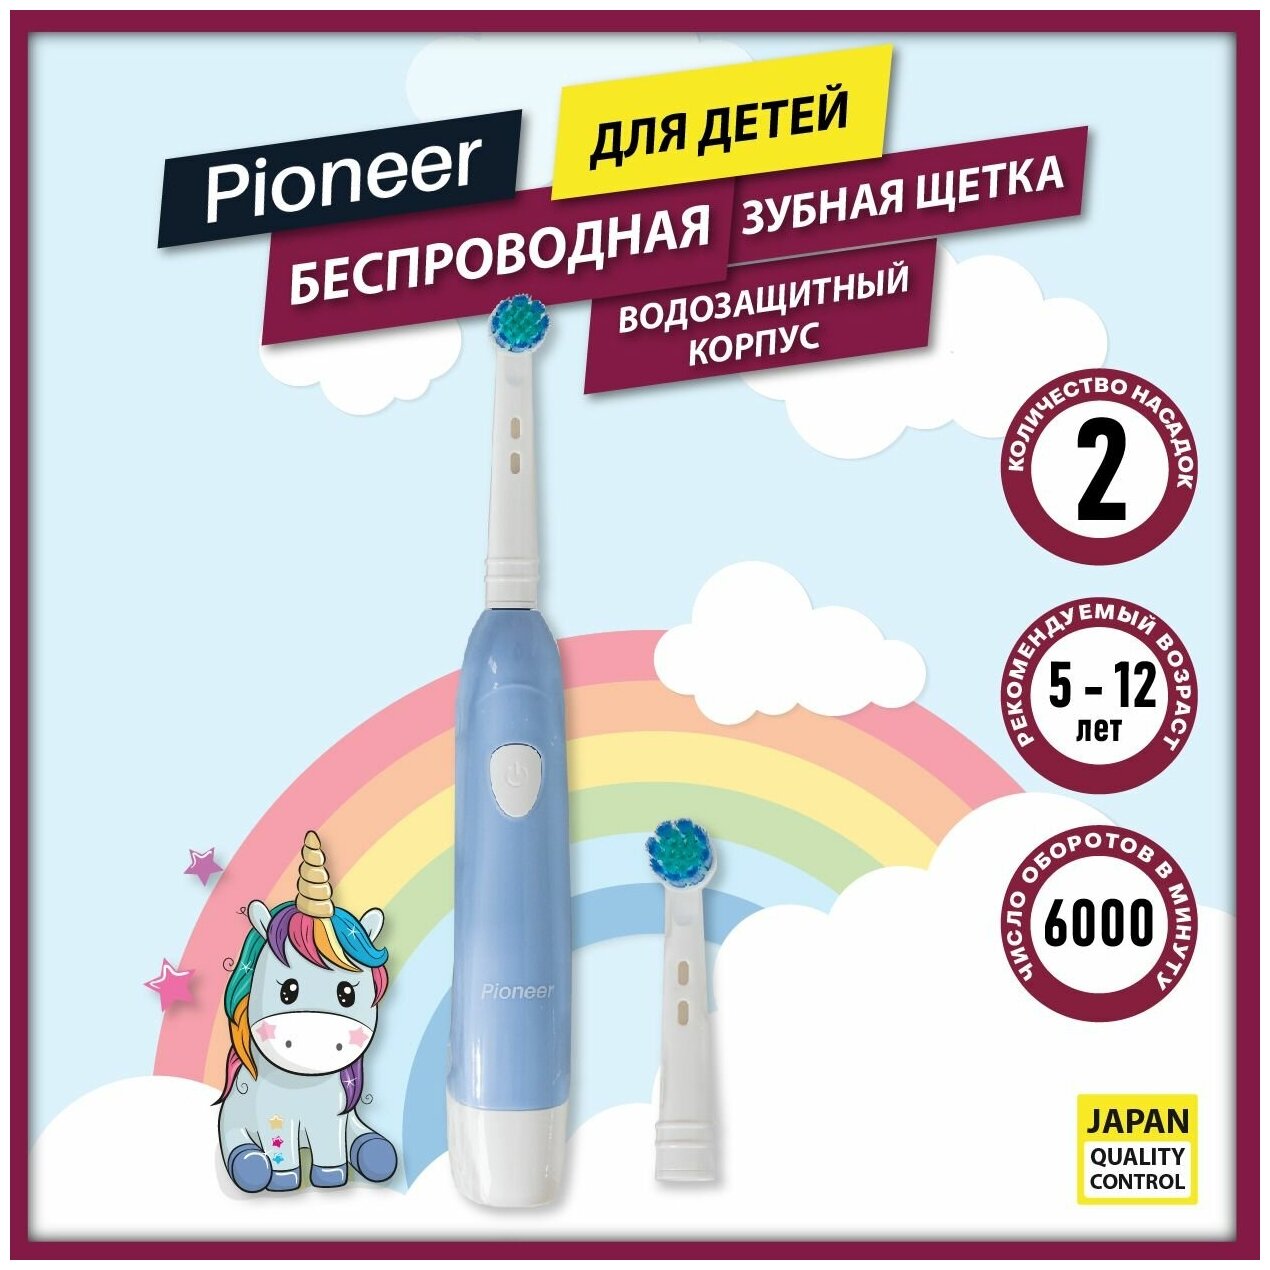 Детская электрическая зубная щетка Pioneer TB-1020 с автоотключением и таймером 30 секунд, индикация заряда, для детей от 5 до 12 лет